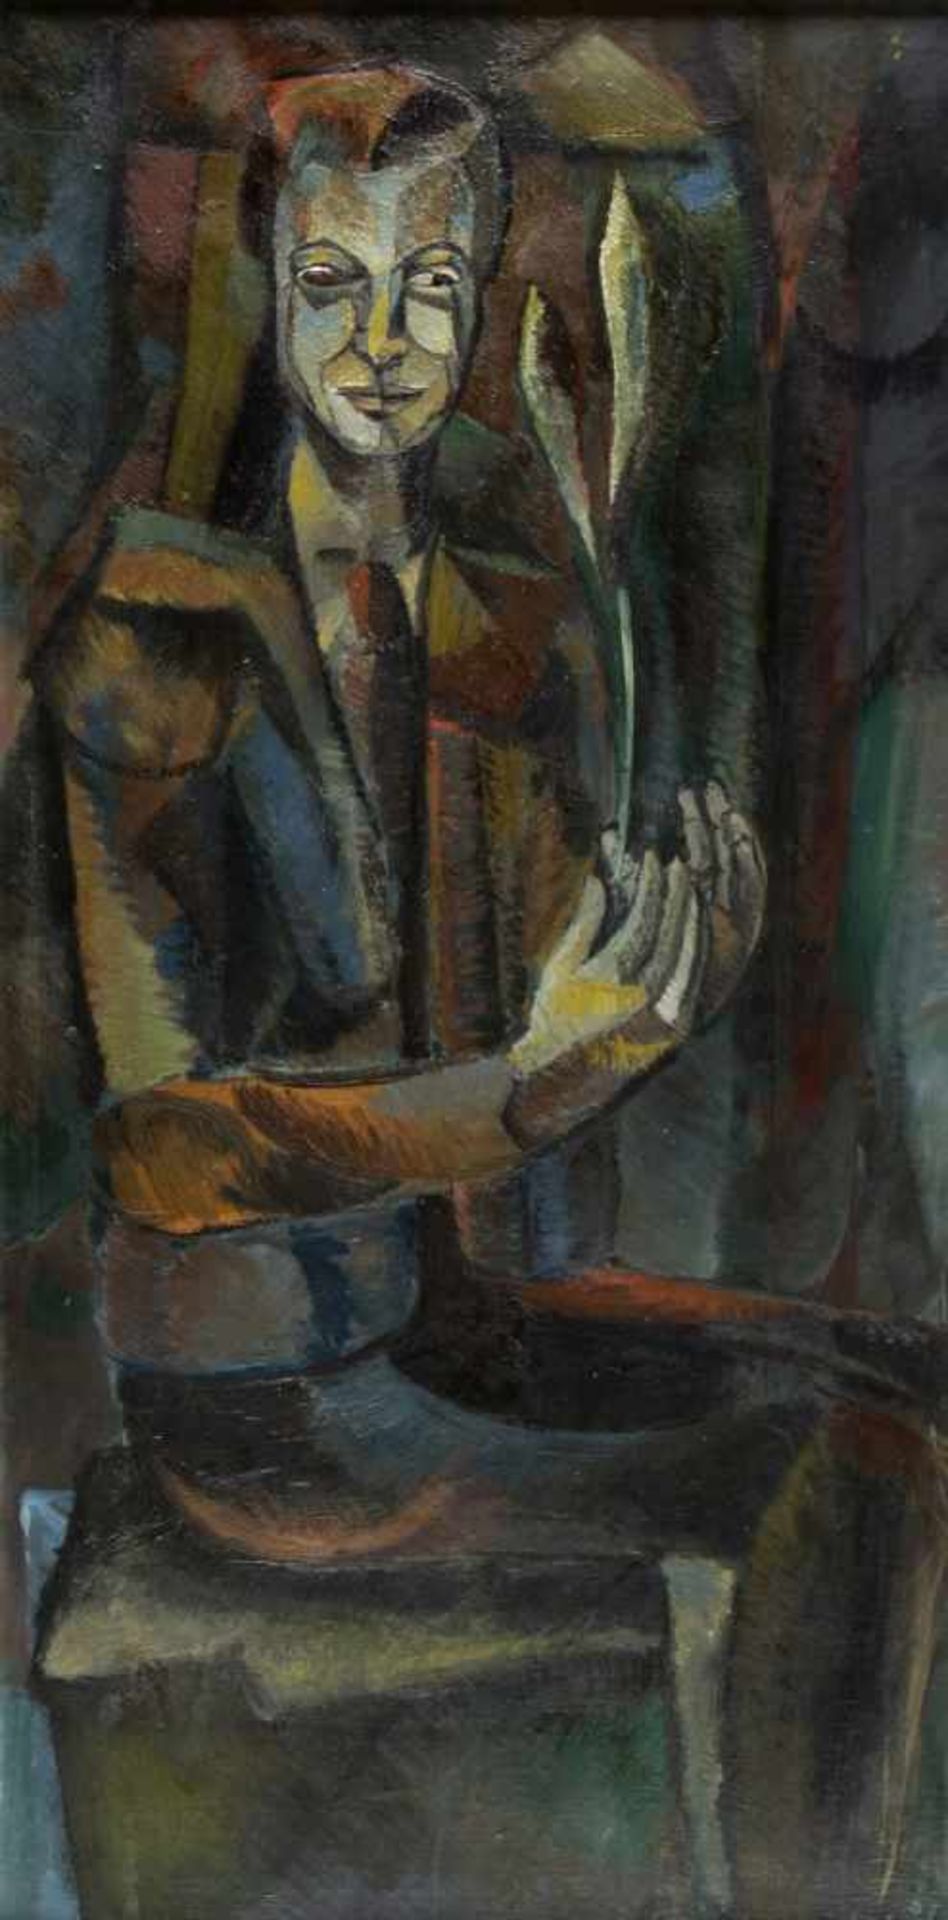 HeimoSitzender Mann mit einer Pflanze in der Hand. Öl/Lwd. Sign. und dat. (19)57. 110 x 54,5 cm.